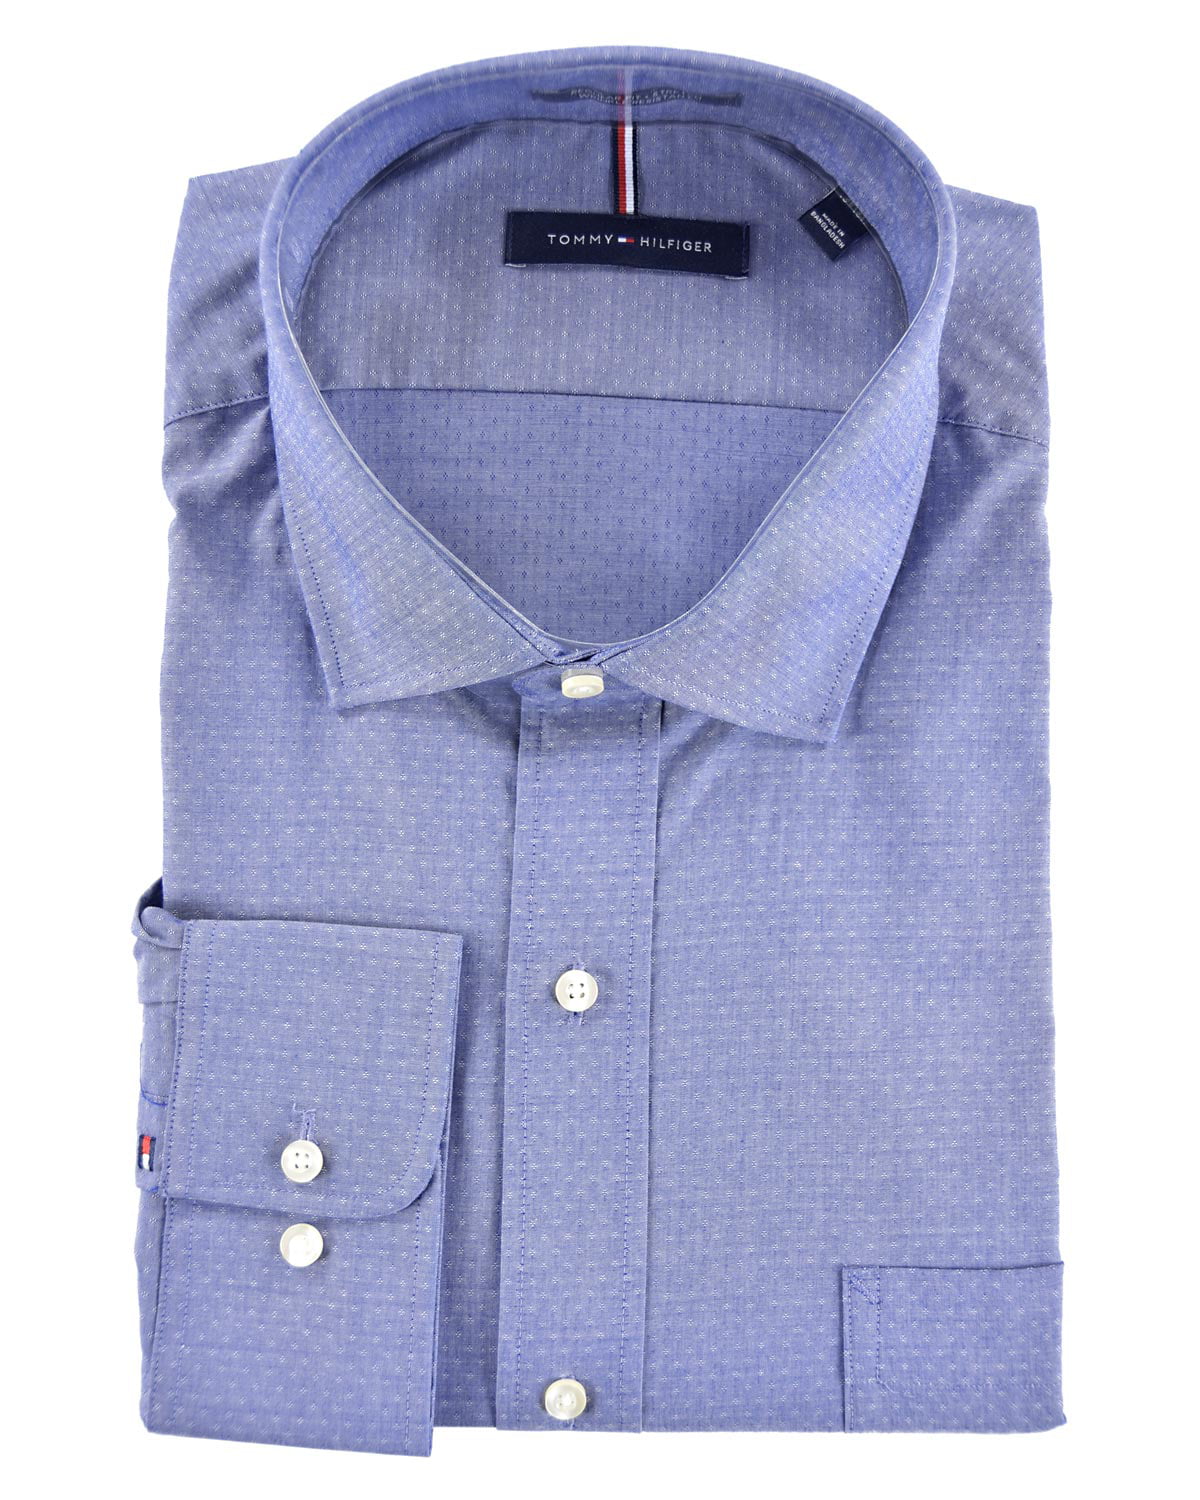 Tommy Hilfiger Men’s Regular Fit Wrinkle Resistant Stretch Dress Shirt 